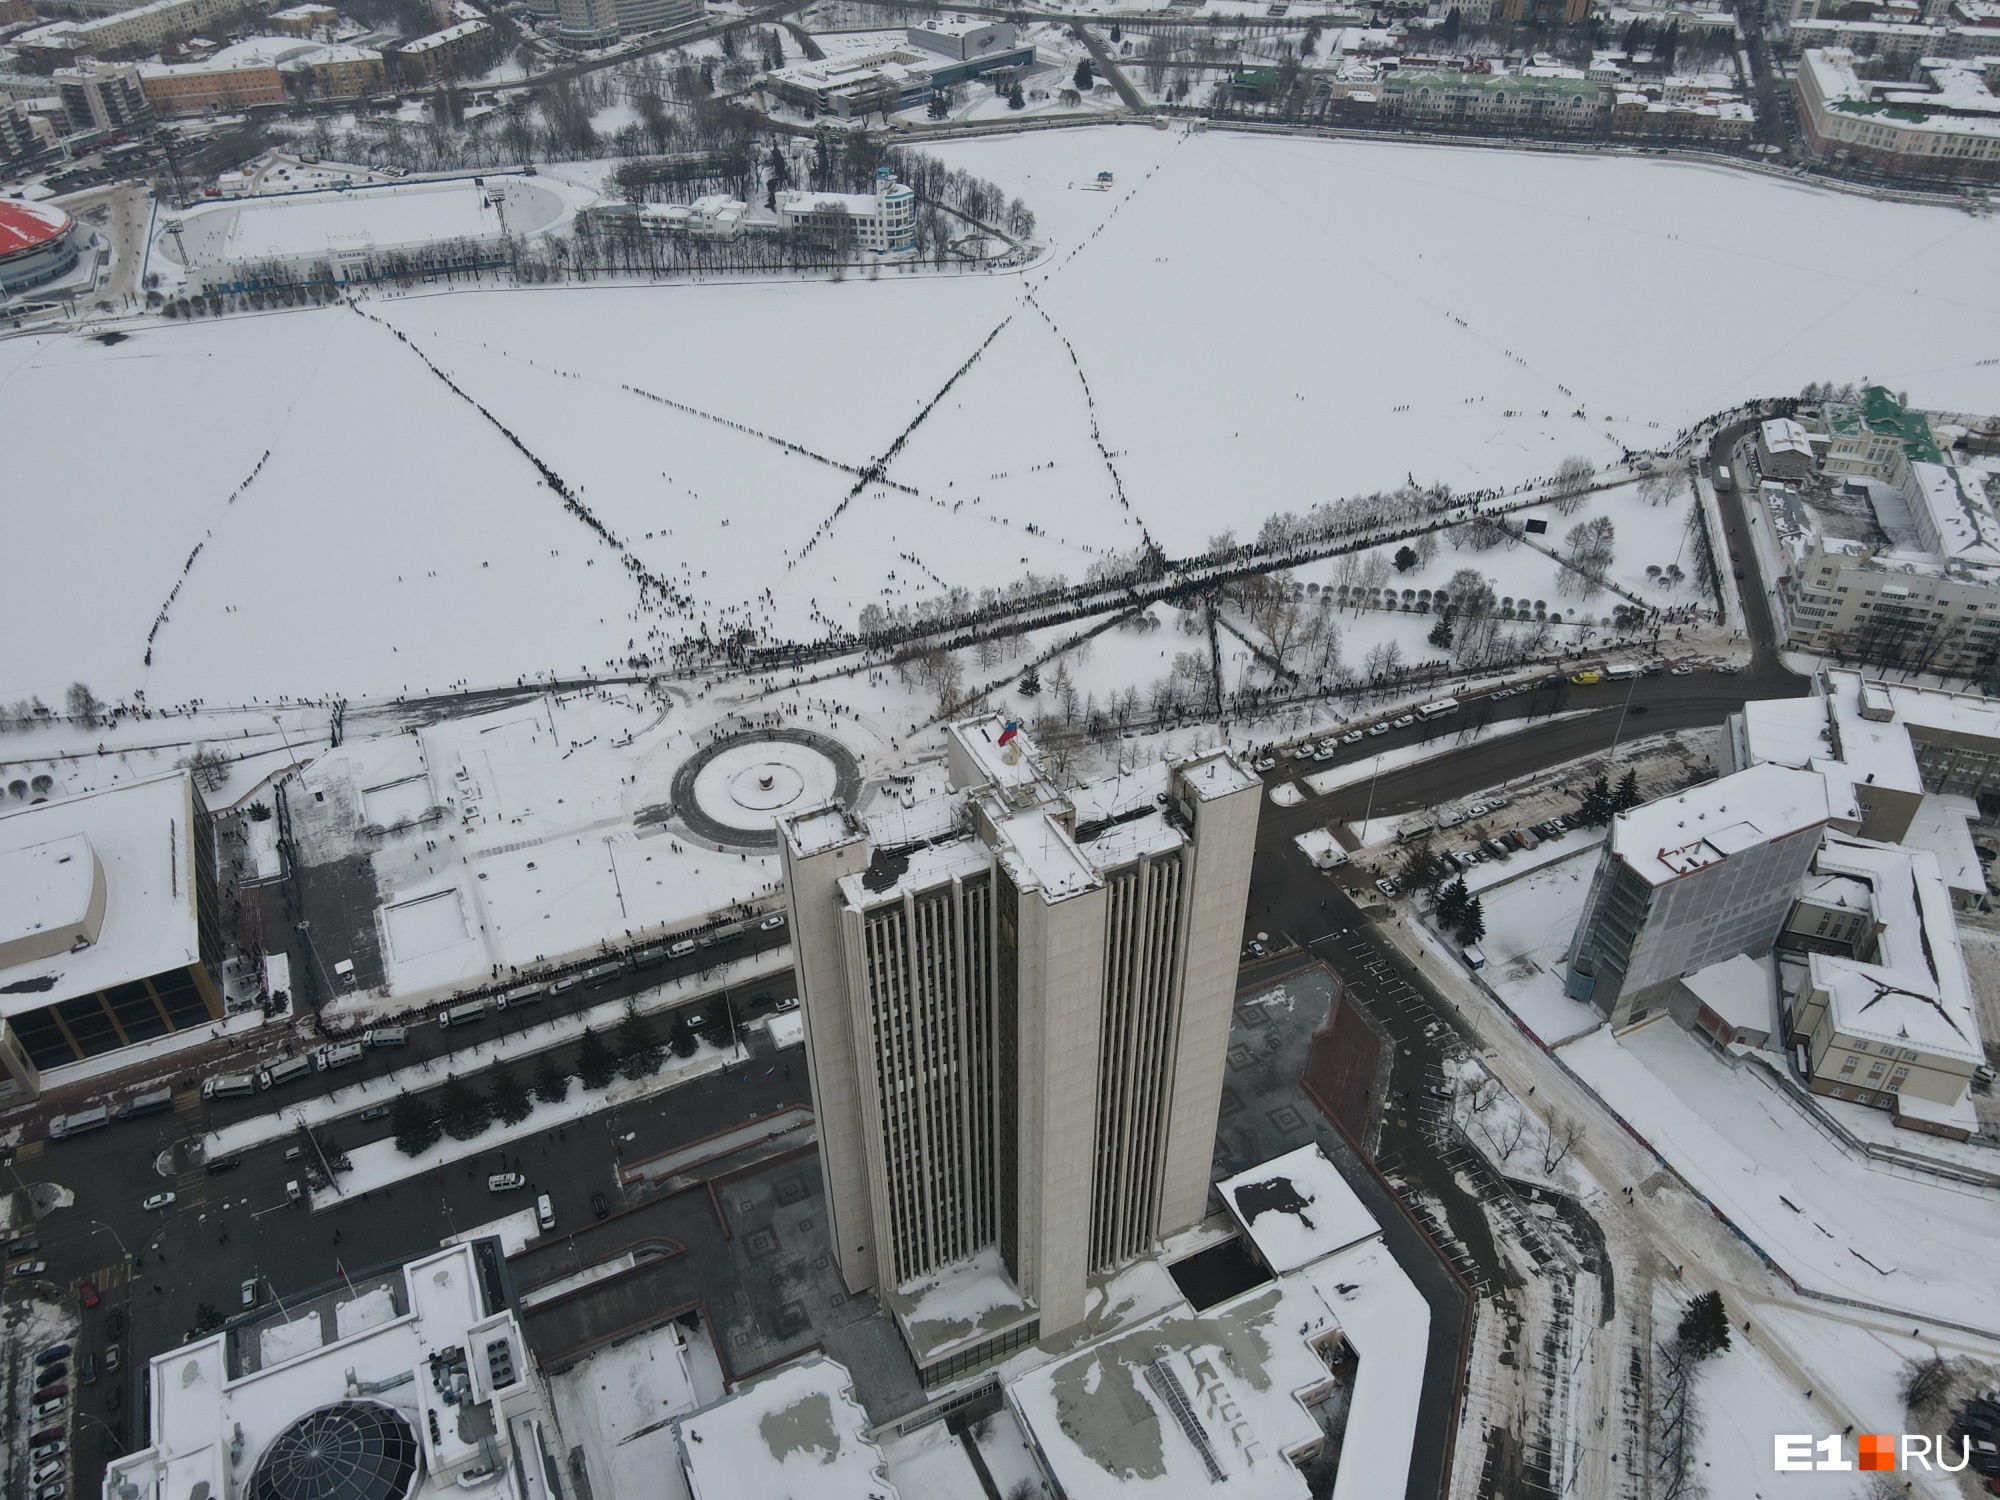 Сотни екатеринбуржцев вышли на лед Городского пруда: показываем акцию протеста в Екатеринбурге сверху